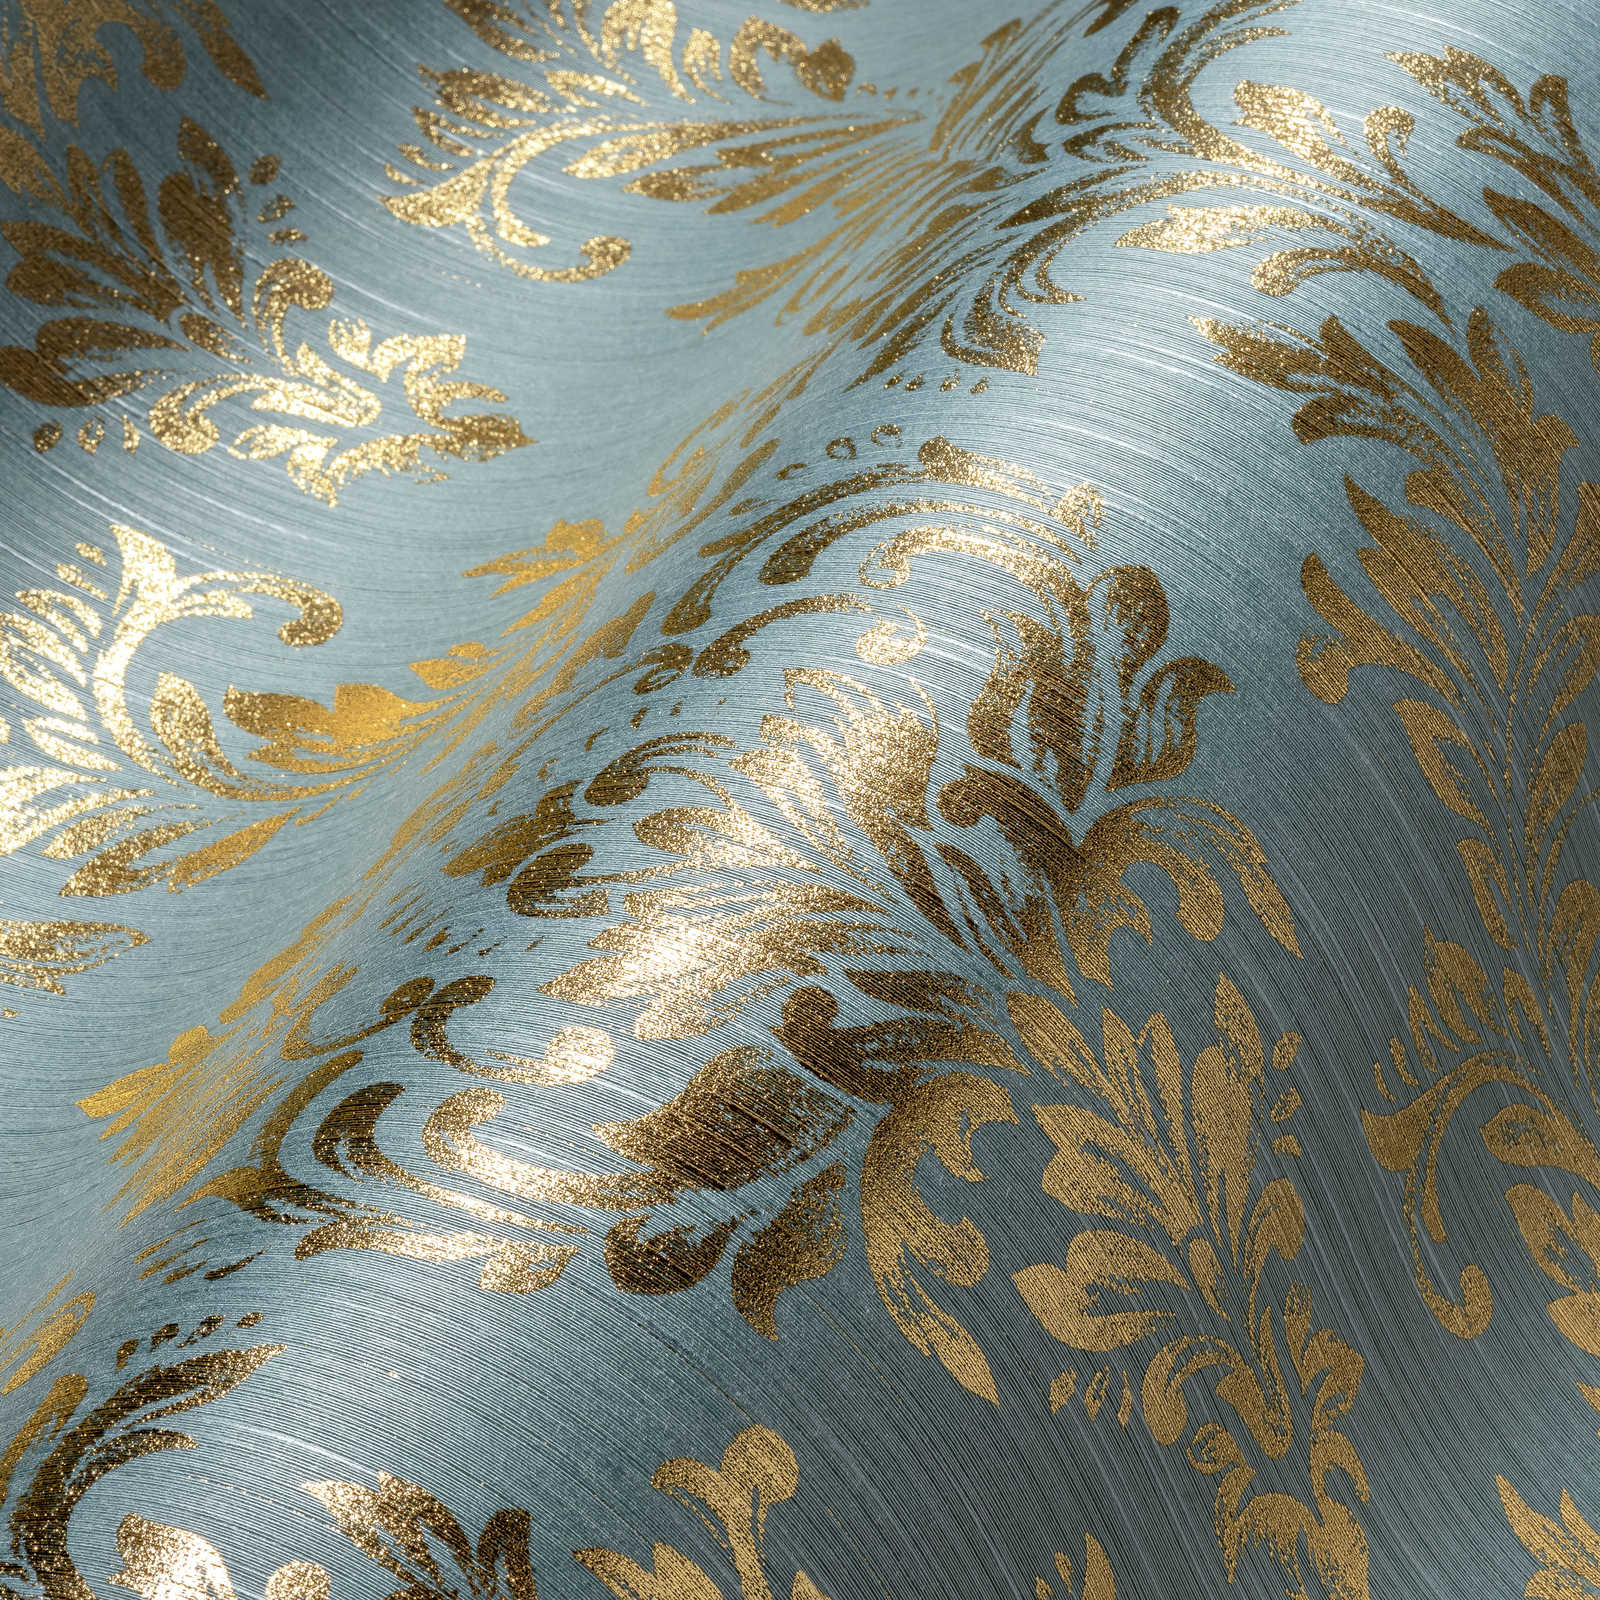             Papier peint ornemental floral avec effet scintillant doré - or, bleu, vert
        